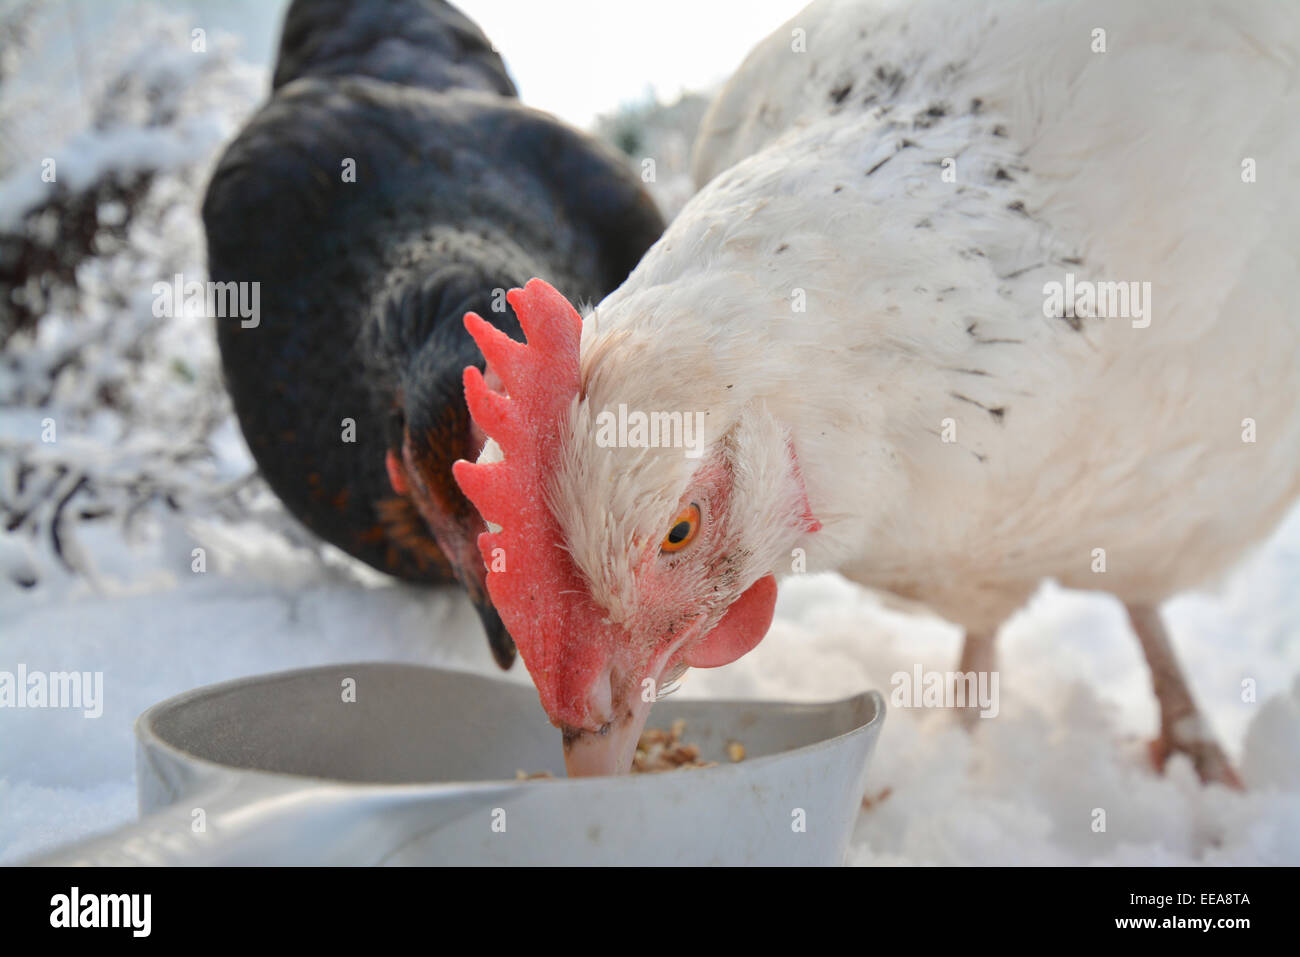 zwei inländische Hühner essen Getreide im Schnee - Nahaufnahme Stockfoto